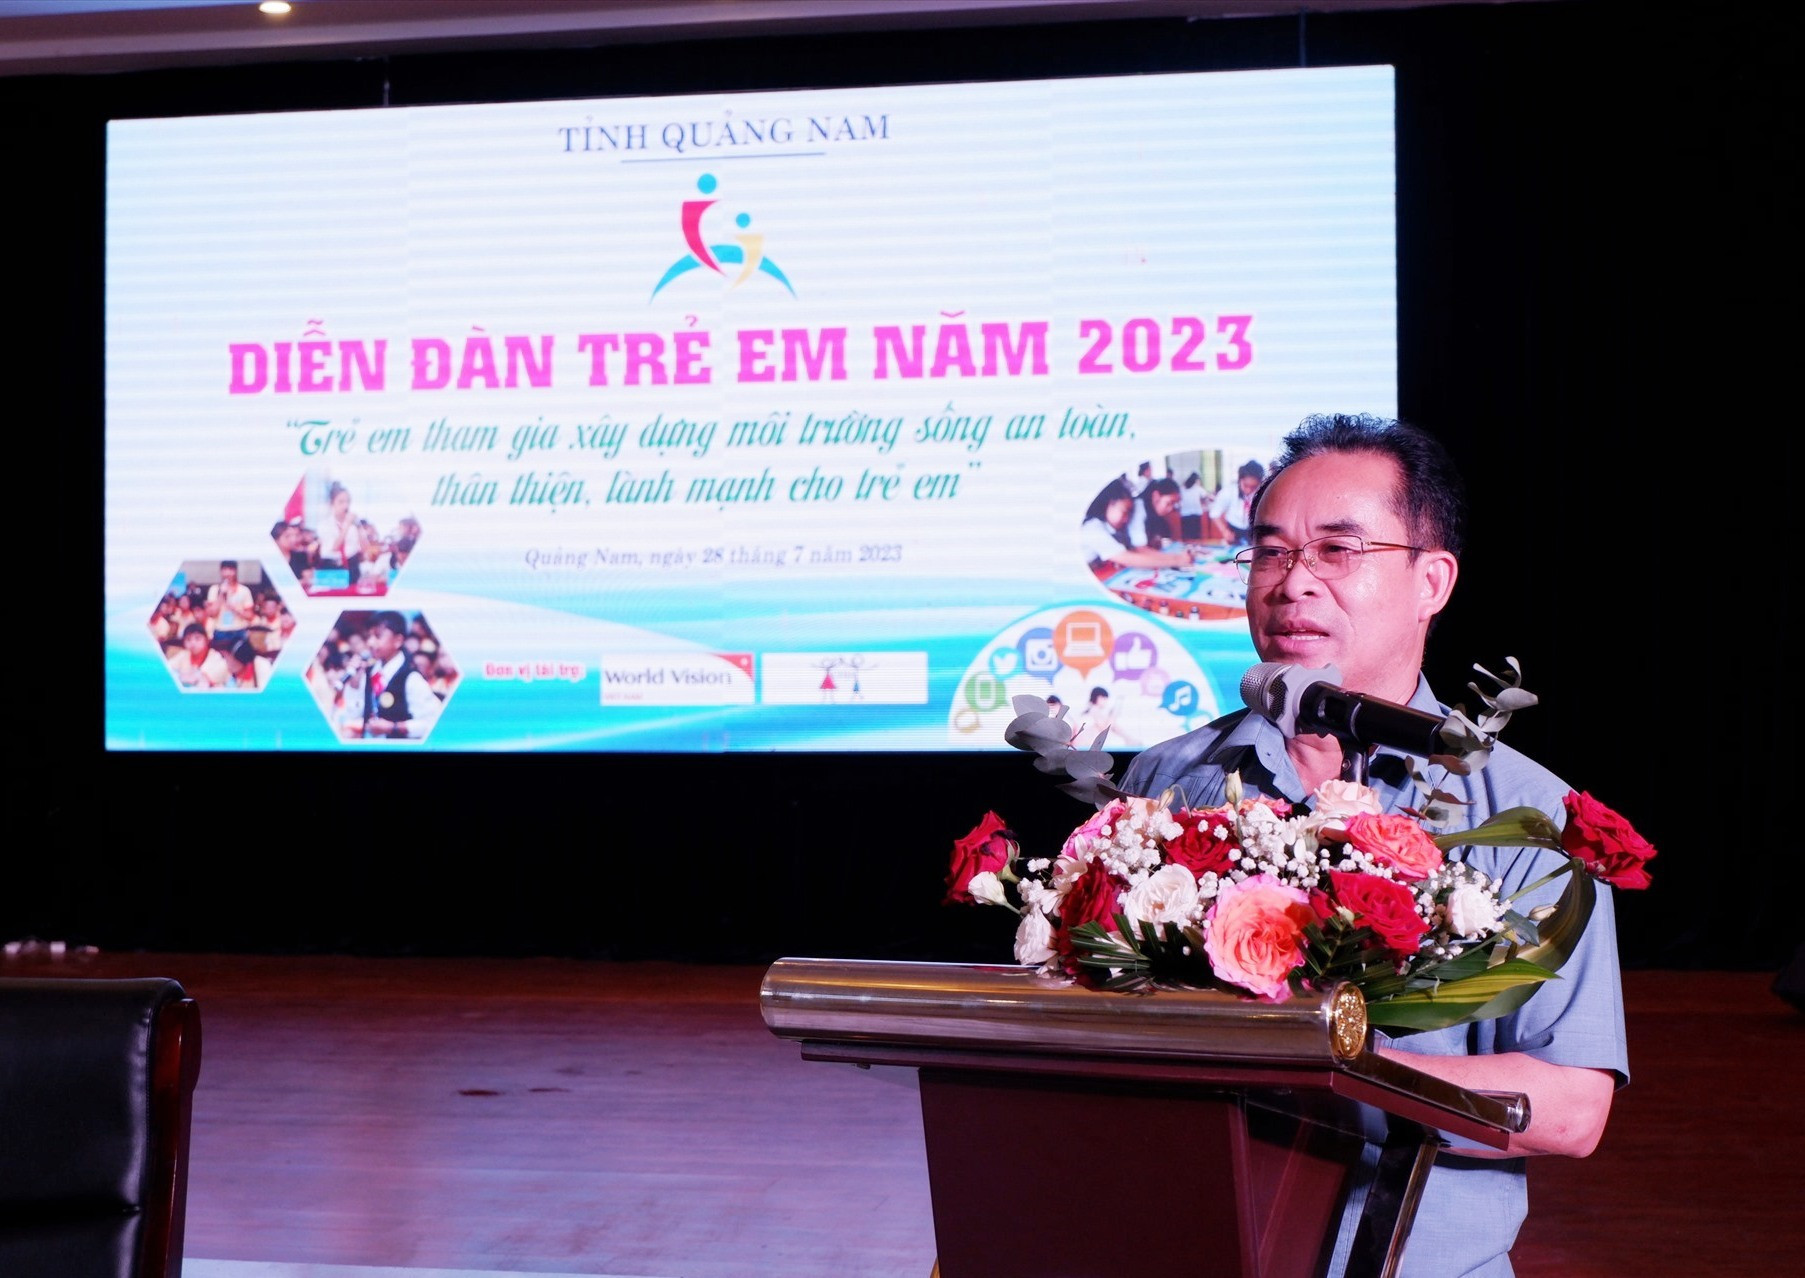 Phó Chủ tịch UBND tỉnh Trần Anh Tuấn yêu cầu các cấp ngành tiếp nhận kiến nghị của trẻ em và có hướng giải quyết sớm. Ảnh: X.H